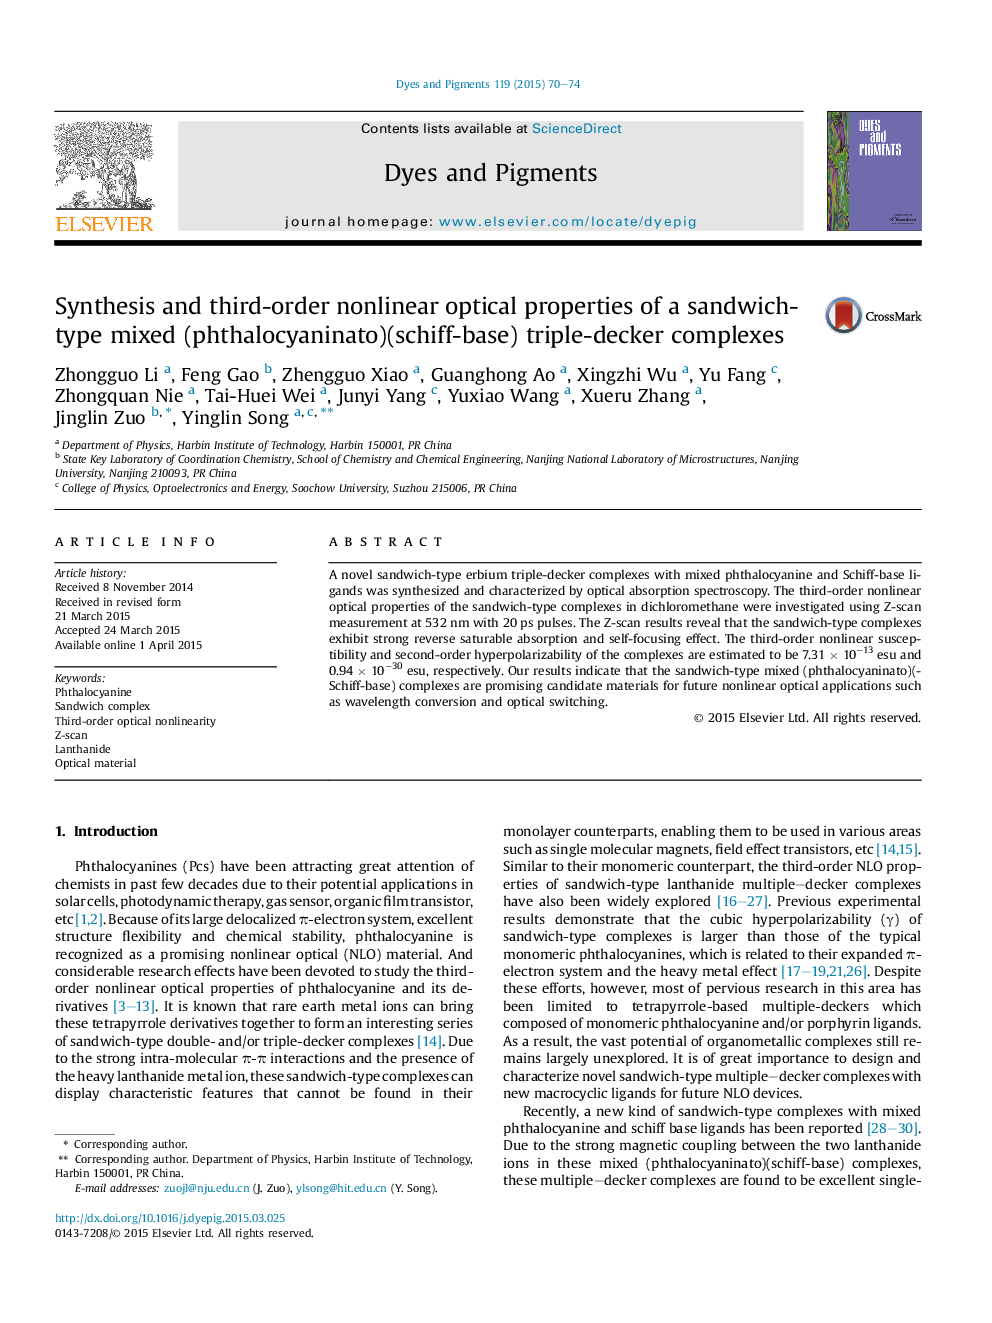 ترکیبات سنتز و خواص اپتیکی غیر خطی سومین مجموعه مجتمع سه طبقه ای مخلوط (فتالوسیانیناتو) (شیف-پایه) 